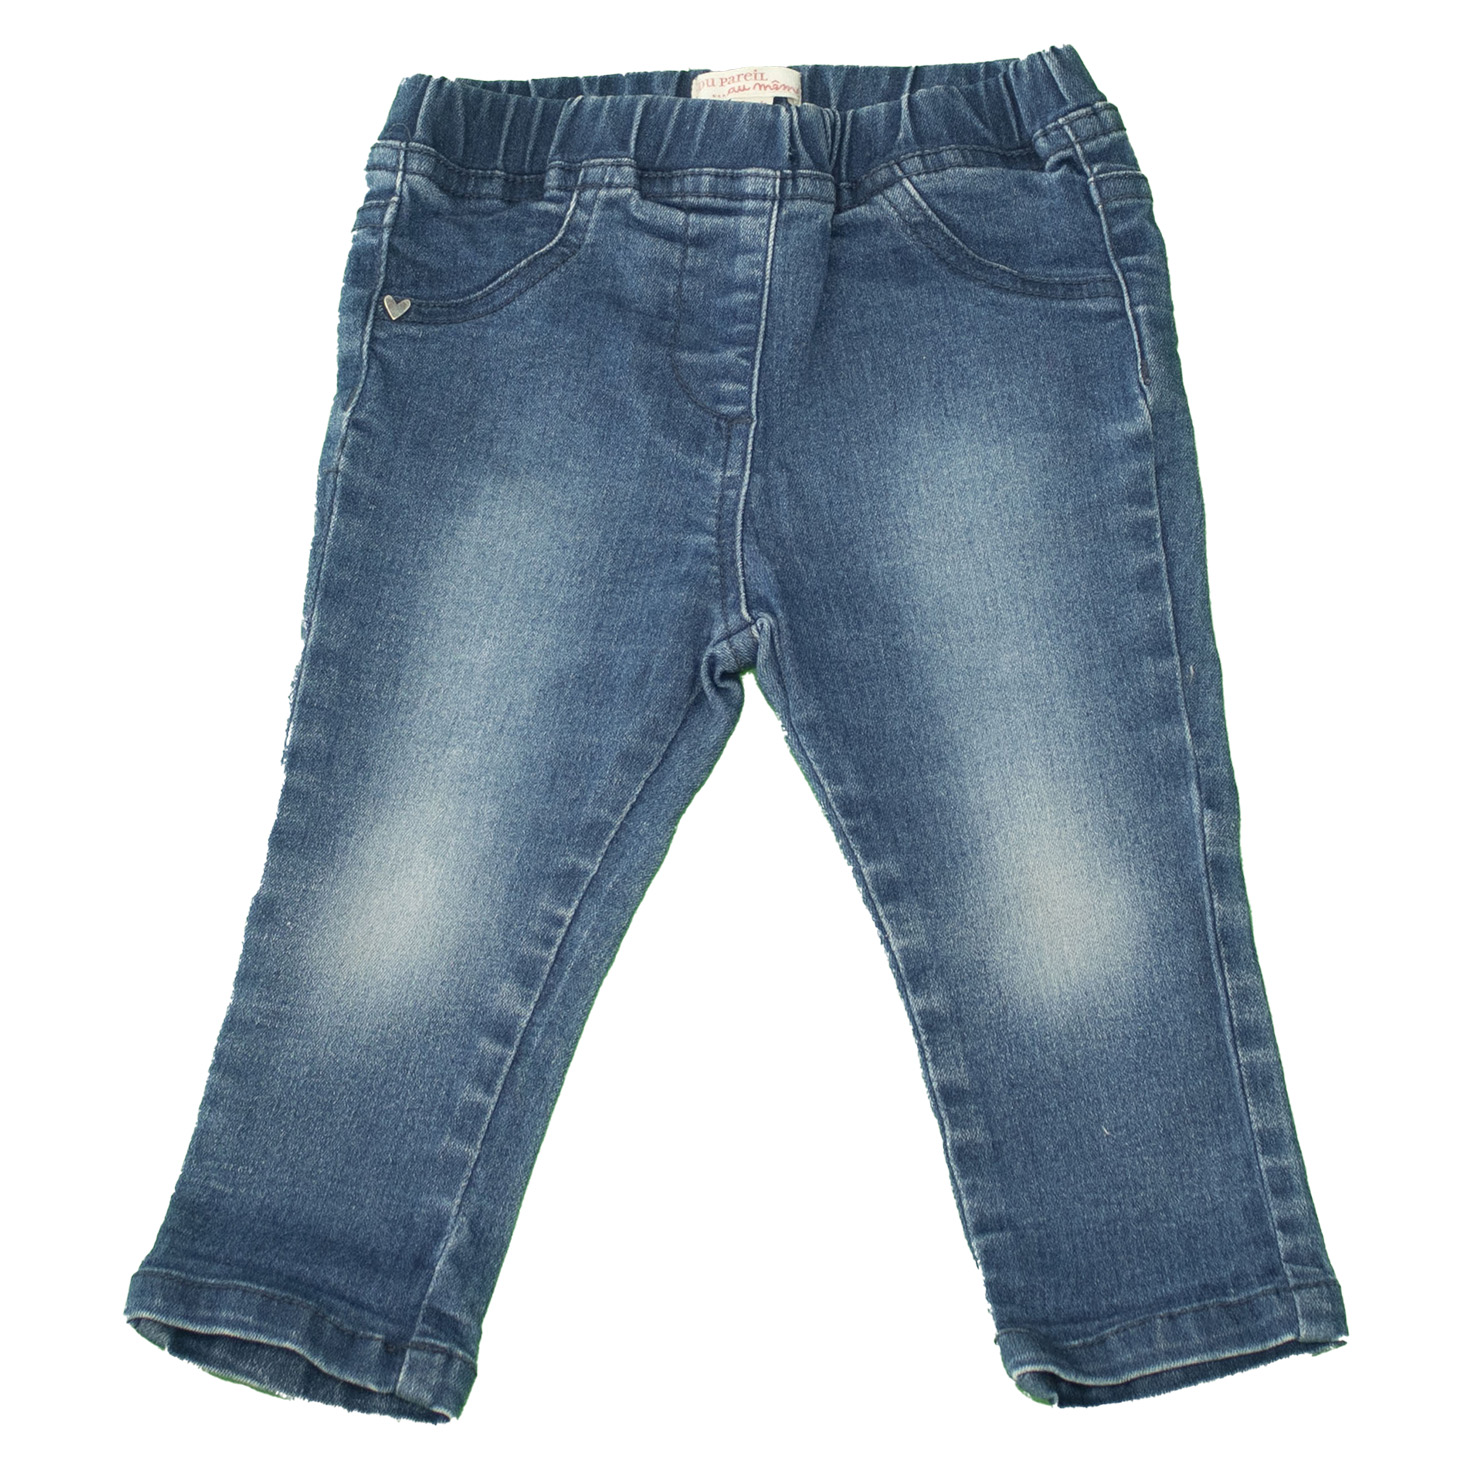 Pantalon jean fille DPAM - 18 mois